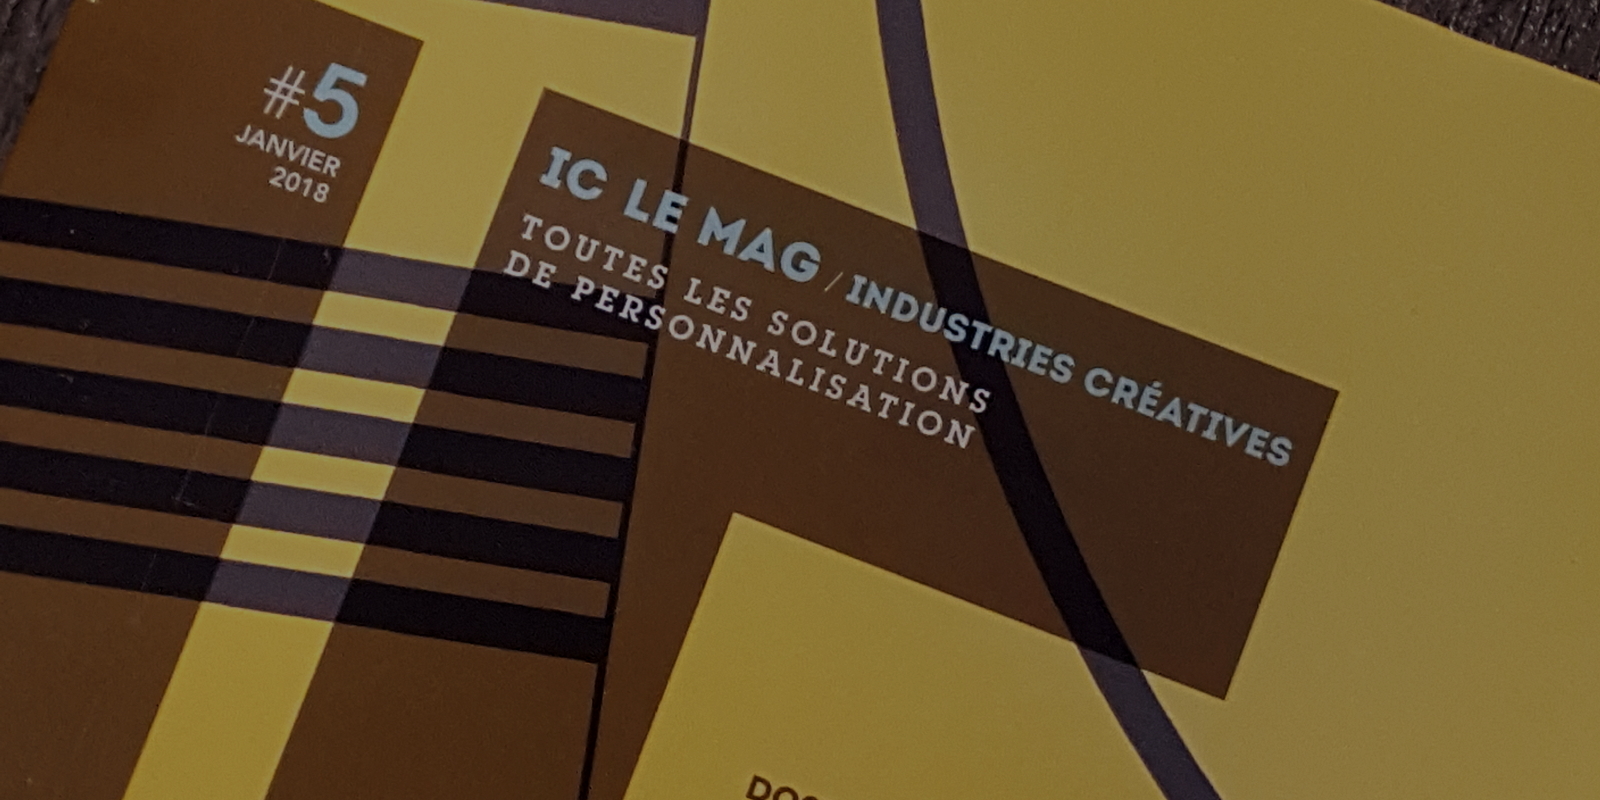 Multisigne est dans IC Le Mag, le magazine des Industries Créatives